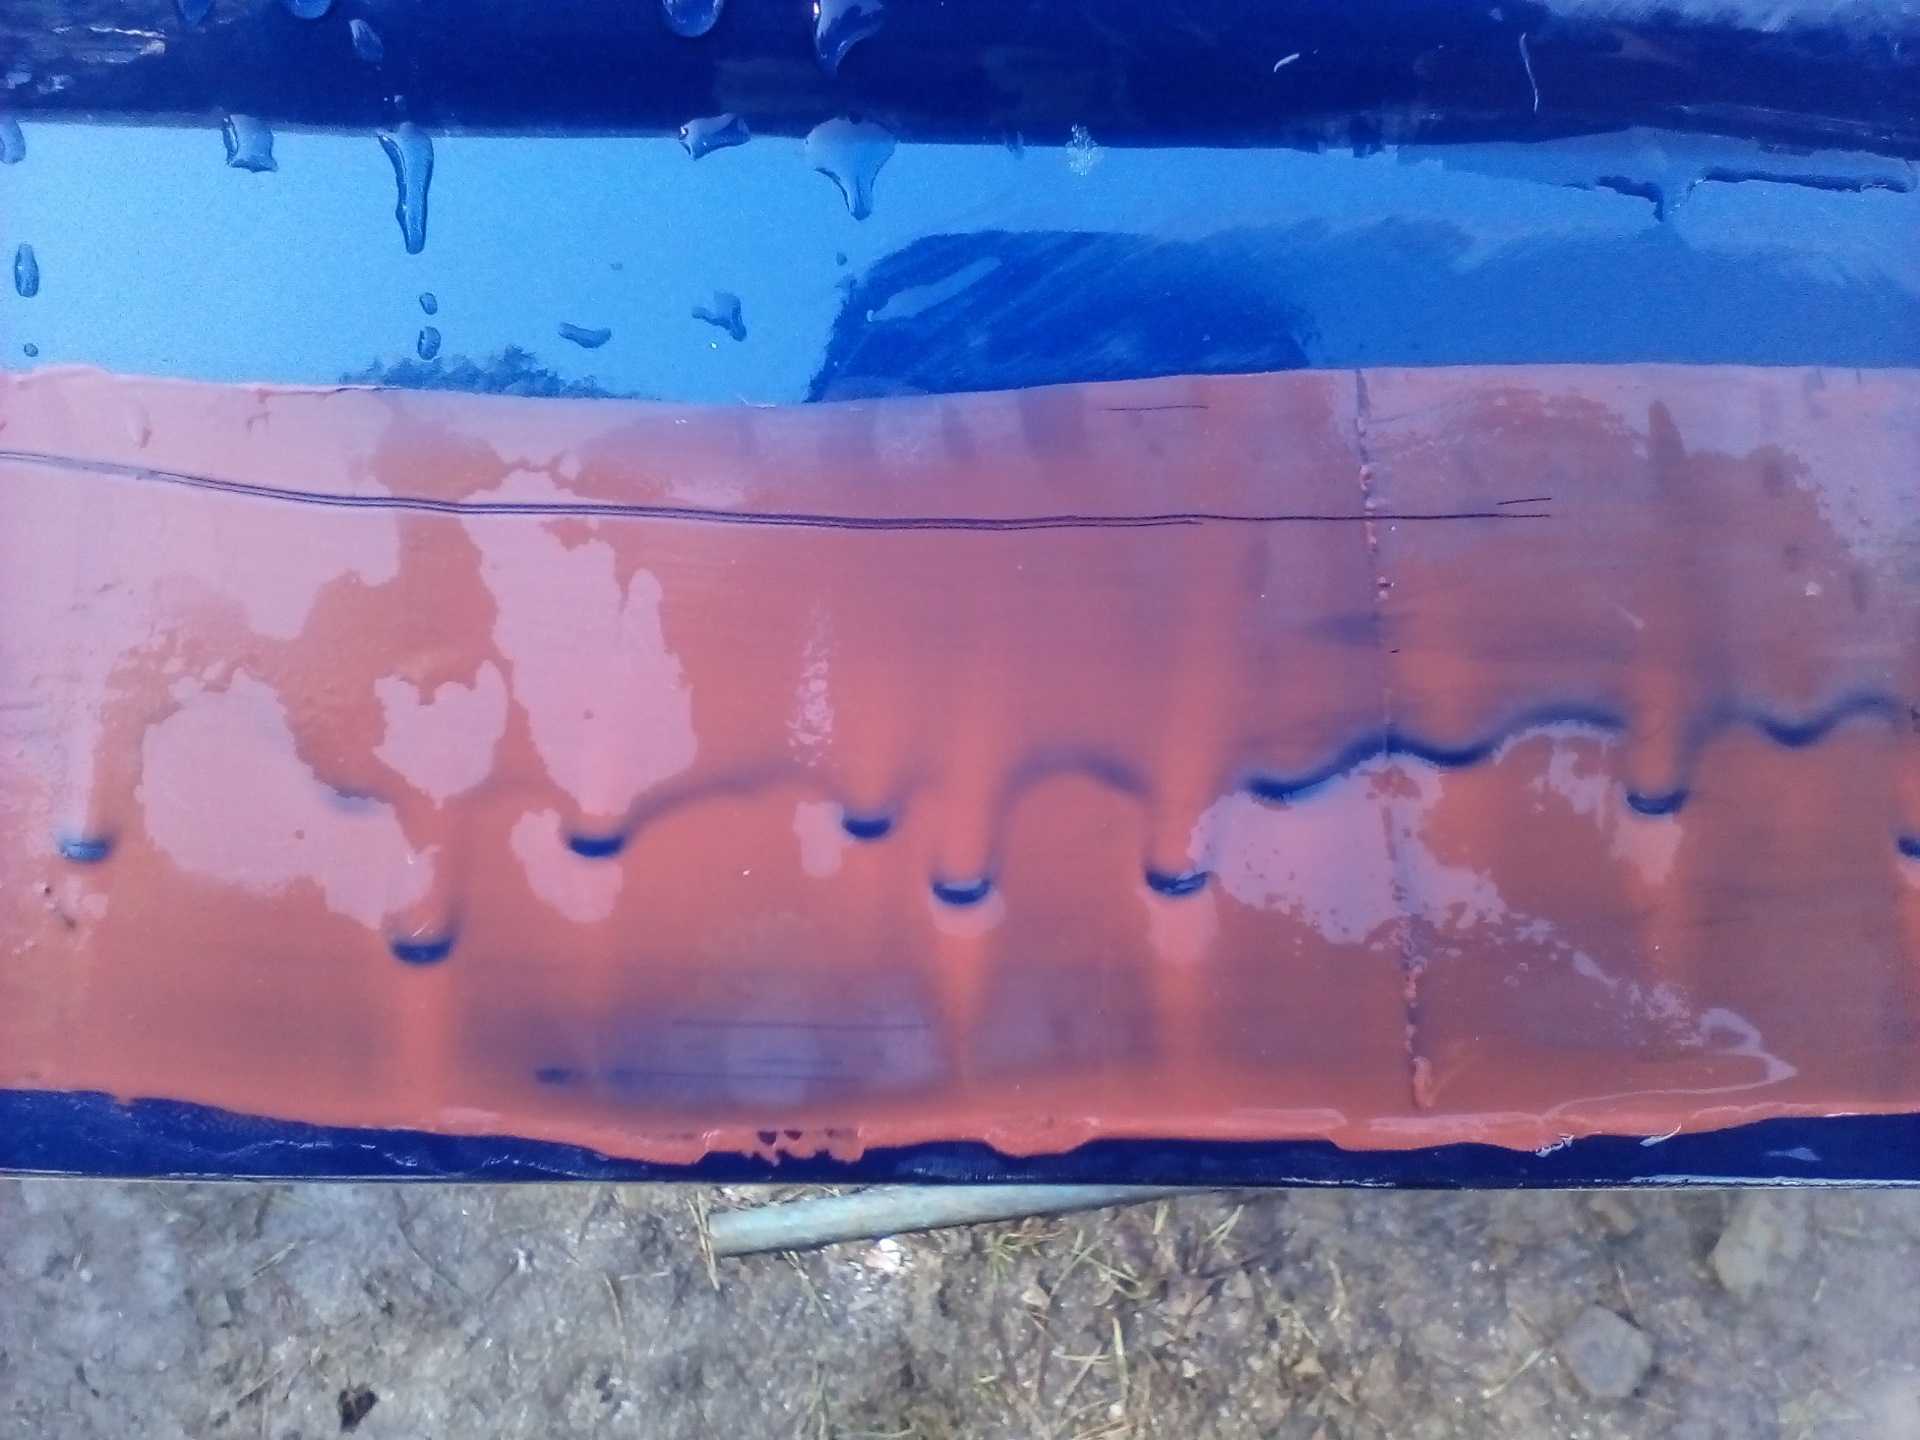 Как убрать подтеки и шагрень после покраски авто своими руками (видео урок)